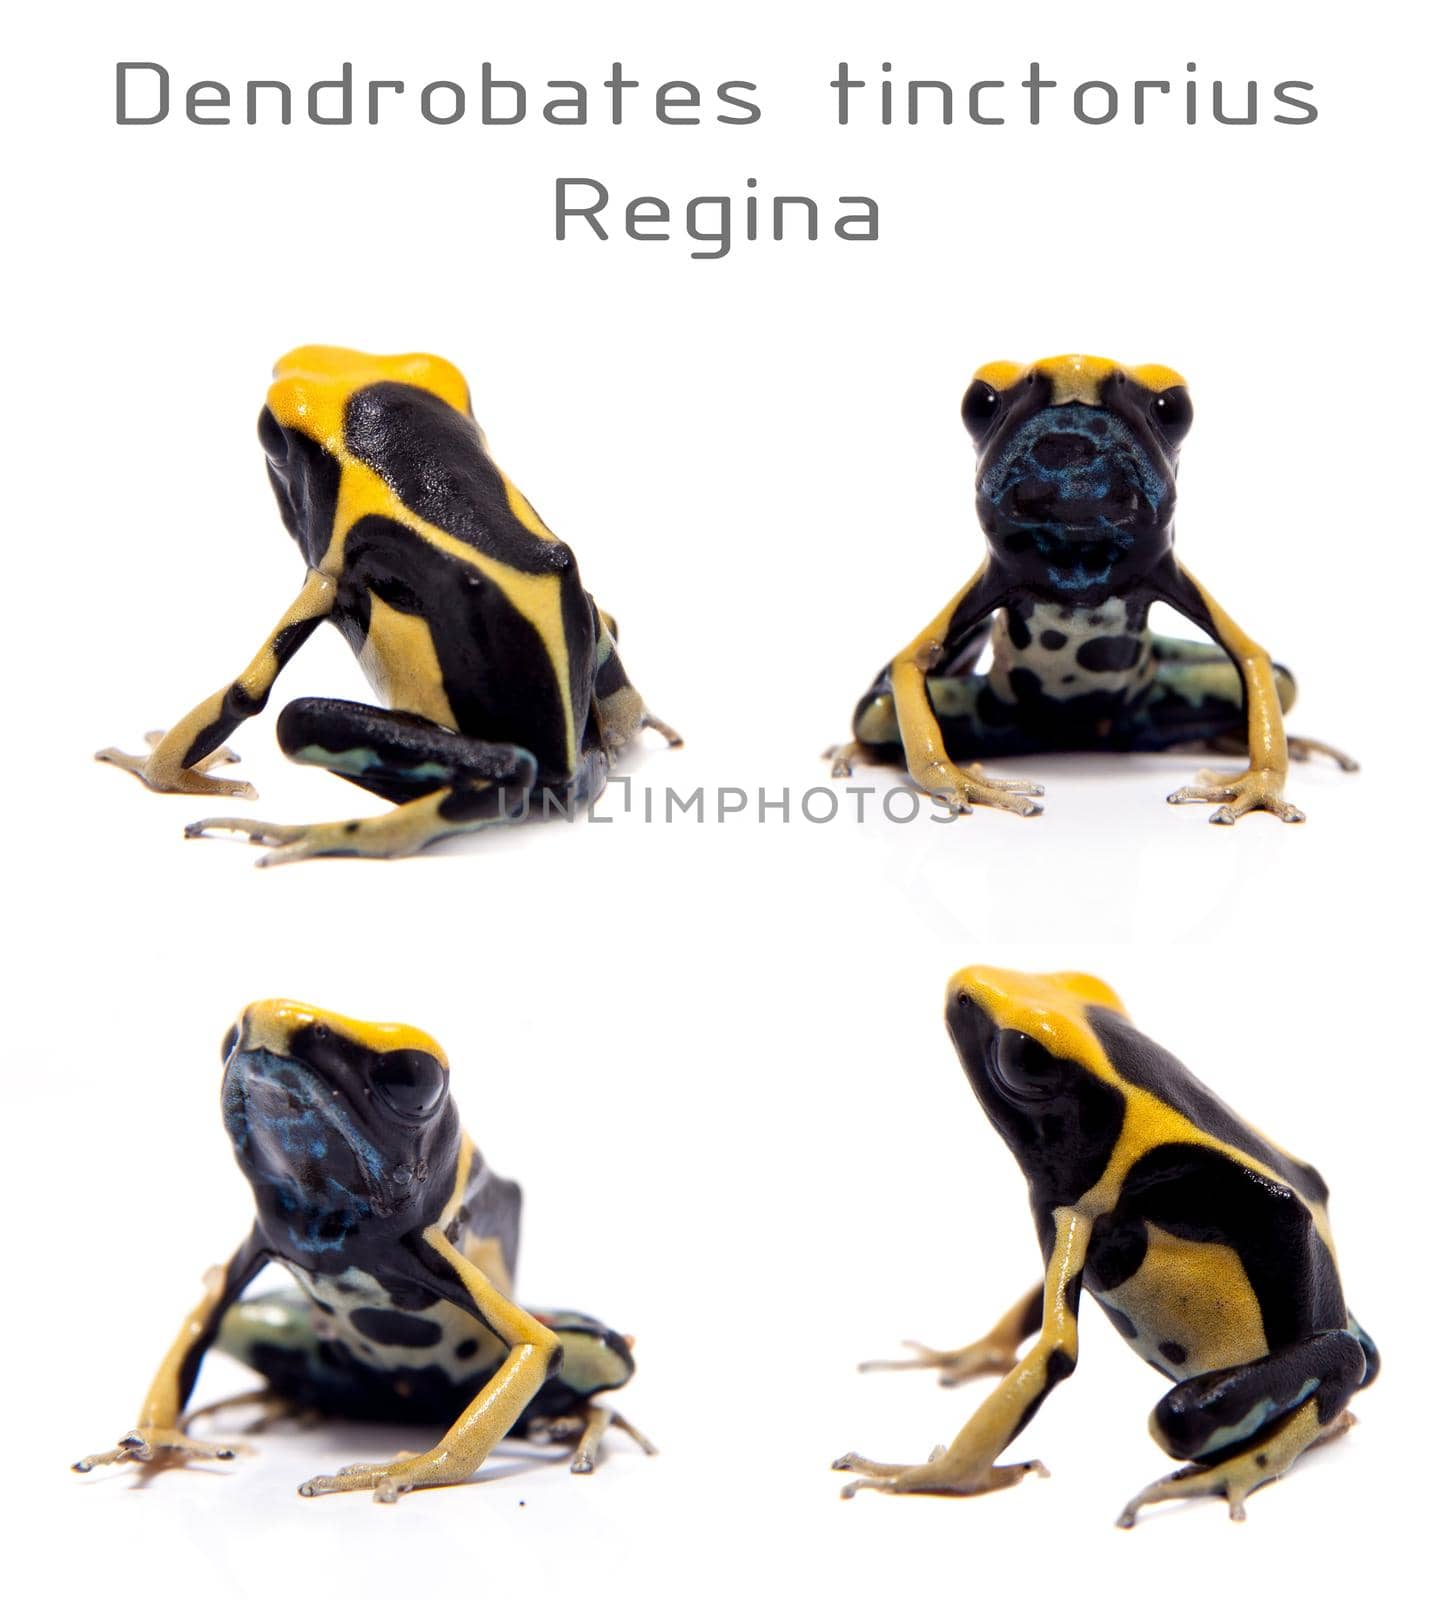 Regina Blue Dyeing Poison Dart Frogling, Dendrobates tinctorius, on white background.